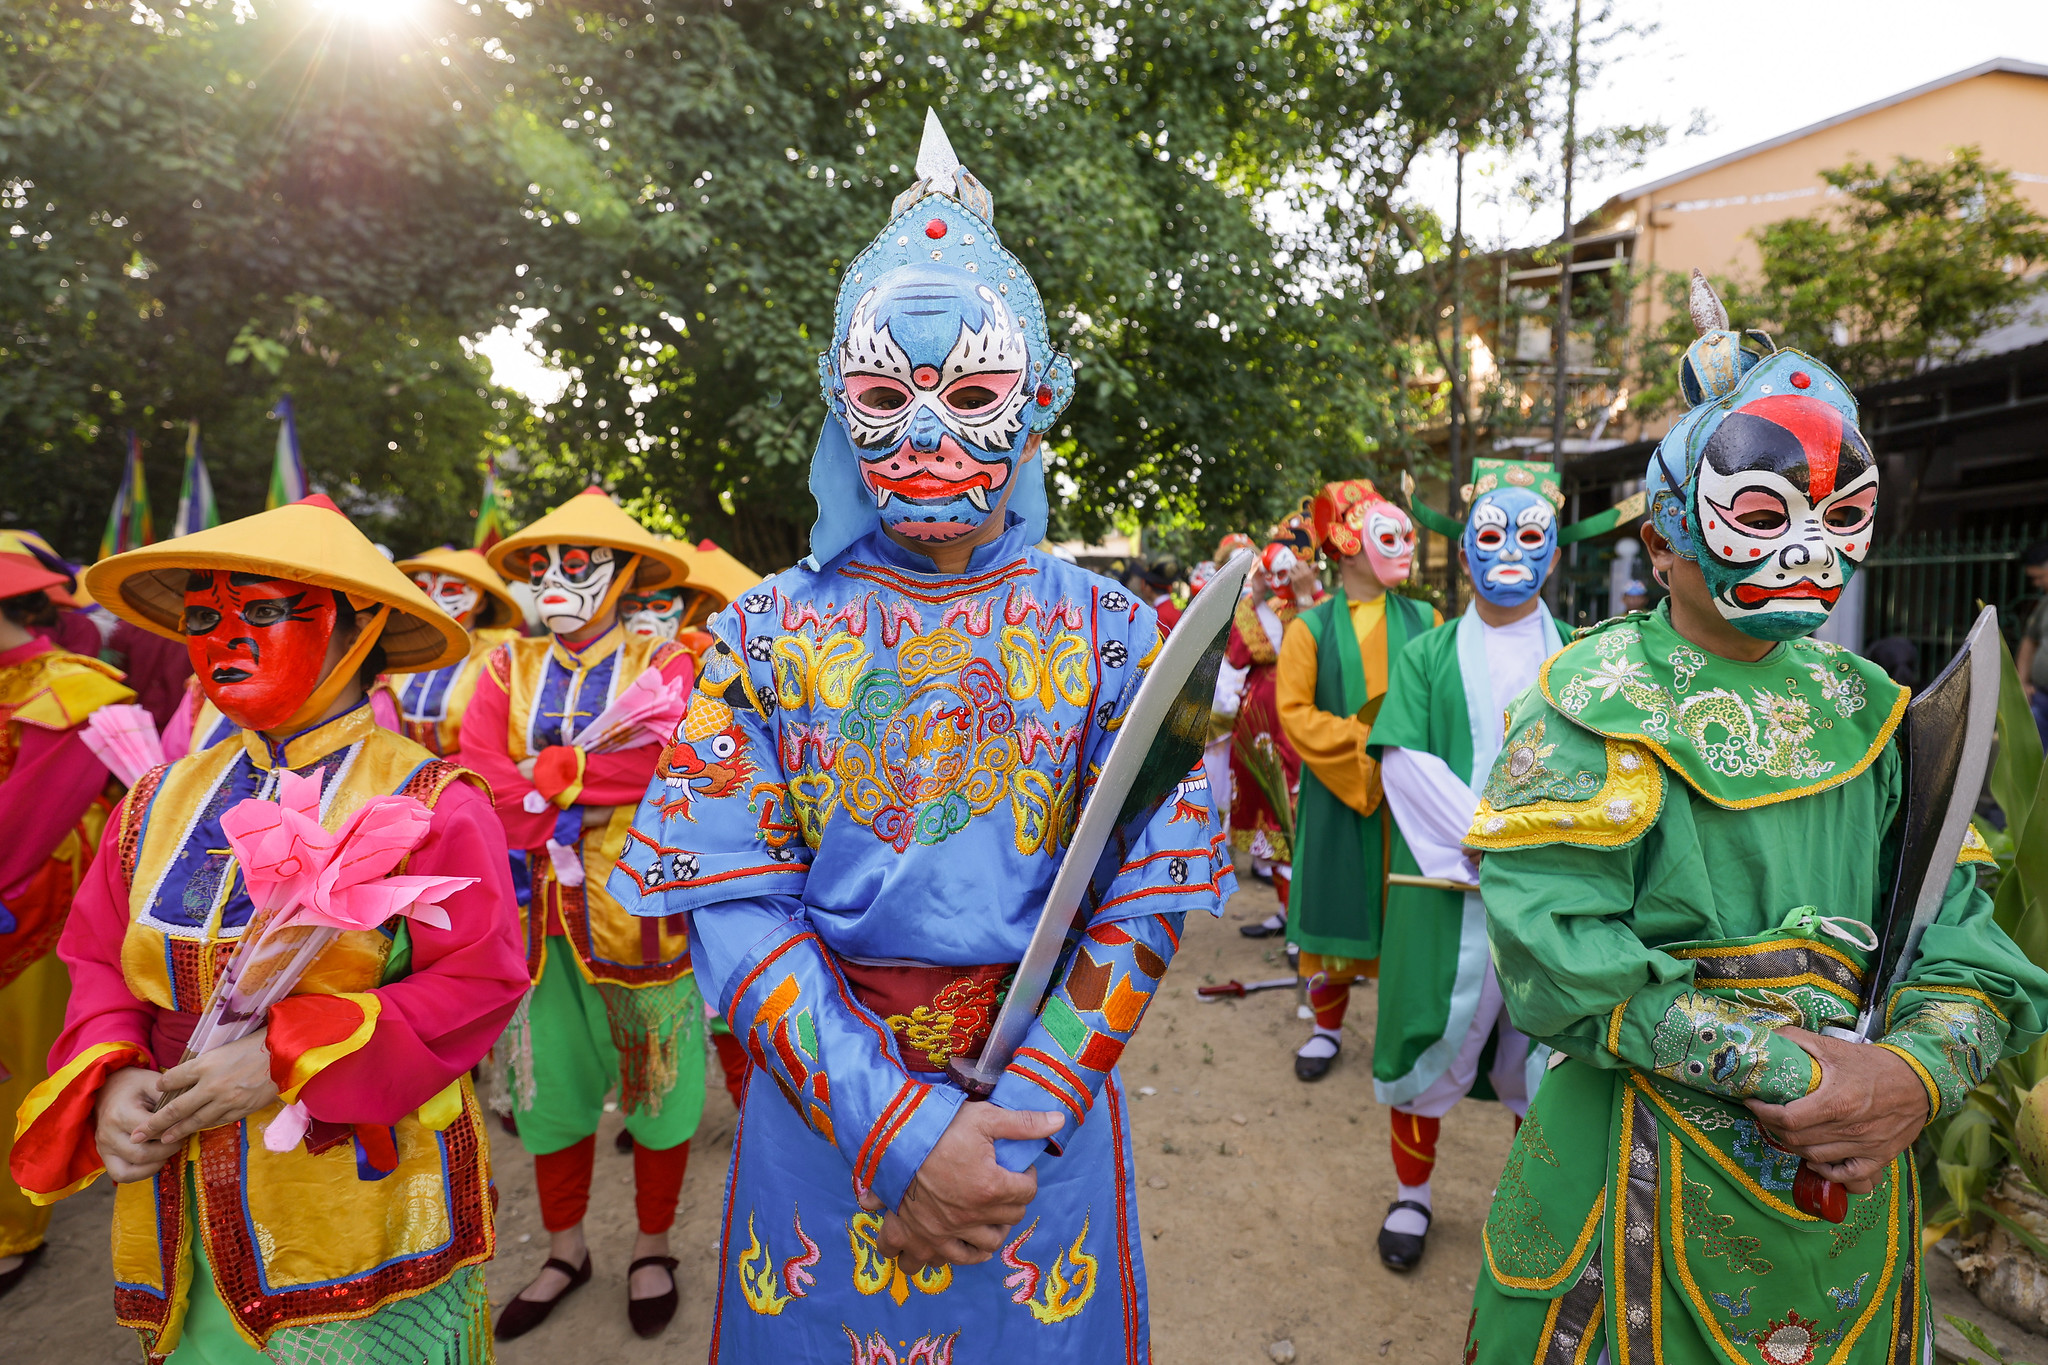 Qua trang phục của nghệ thuật cung đình, các nhân vật tuồng hóa trang mặt nạ khác nhau, tạo nên một chương trình quảng diễn đường phố sinh động, sắc màu.